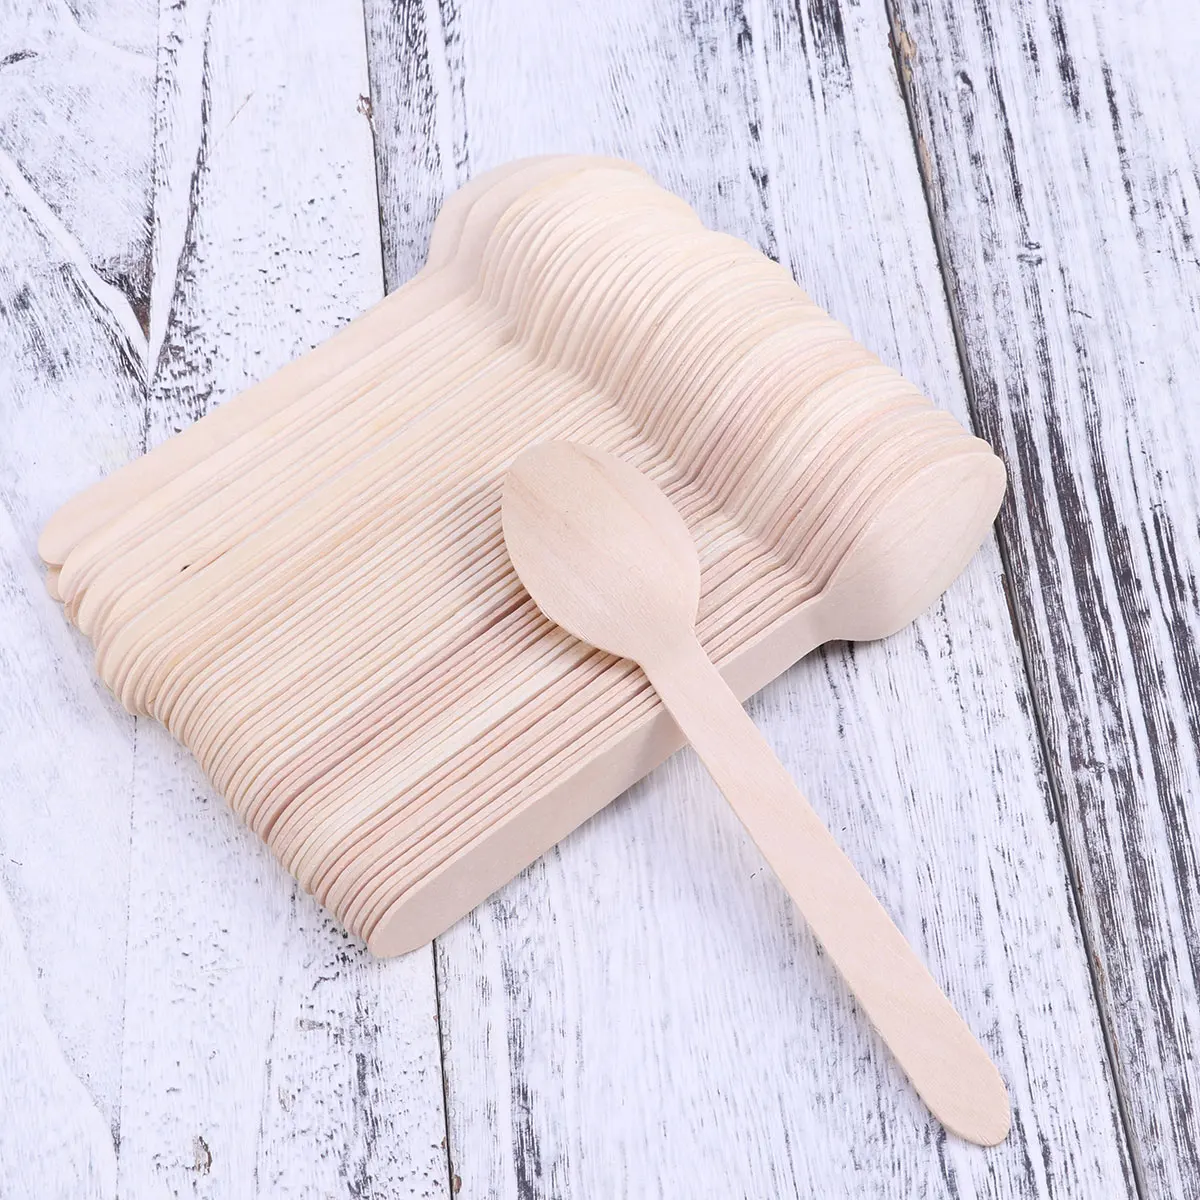 100 шт 160 мм деревянные ложки экологически чистые одноразовые натуральные деревянные ложки для посуды биоразлагаемые ложки для кухонного ресторана